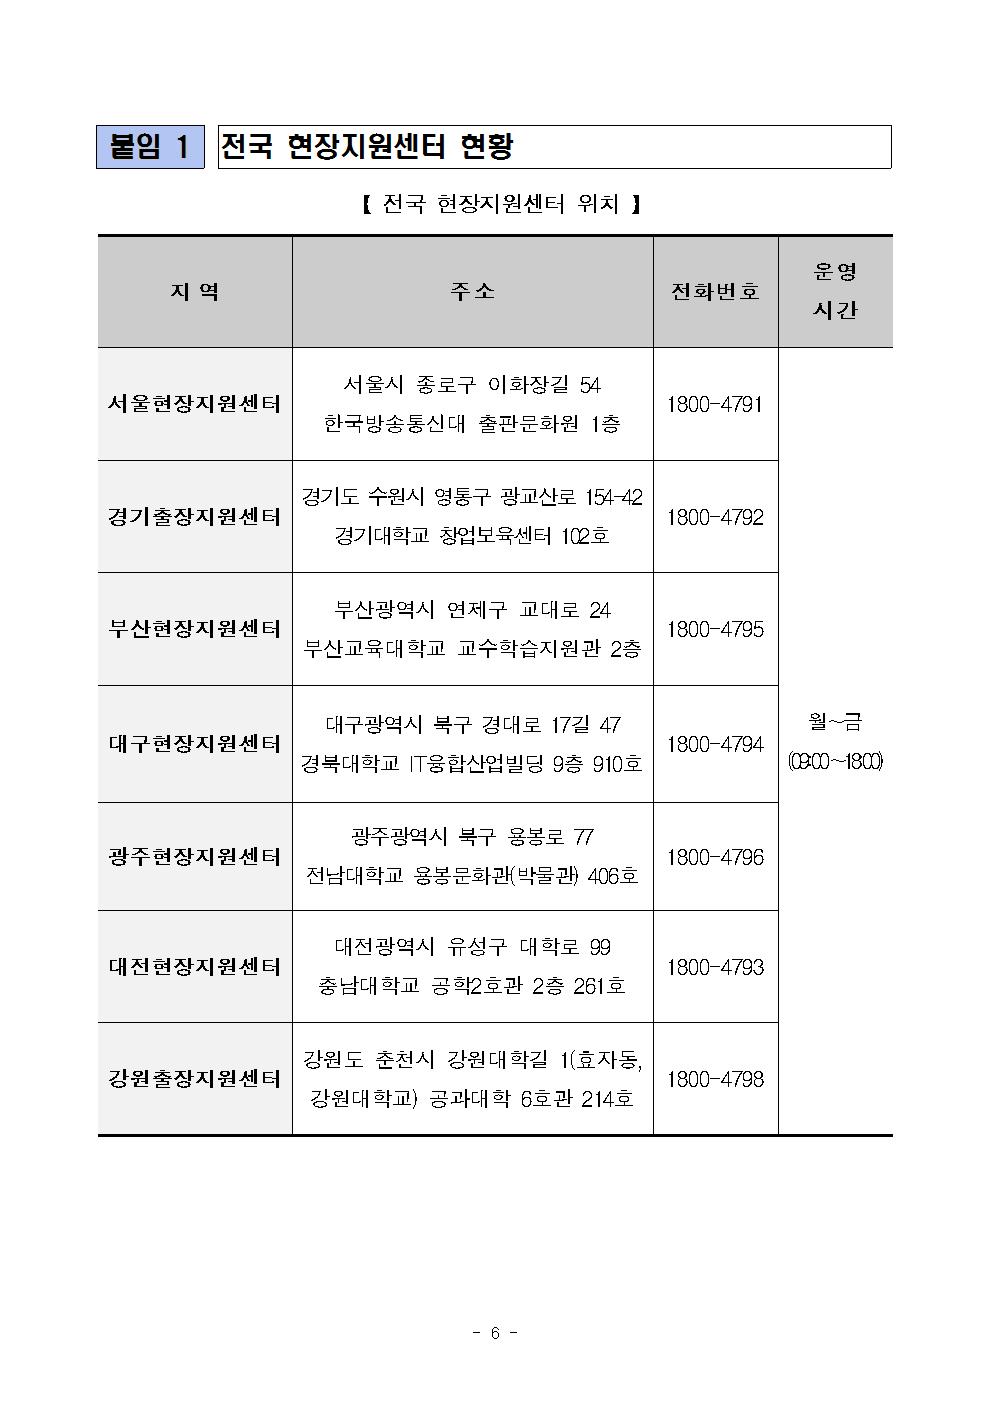 08-23(수)[보도자료] 2017년 2학기 국가장학금 2차 신청이 시작됩니다!006.jpg